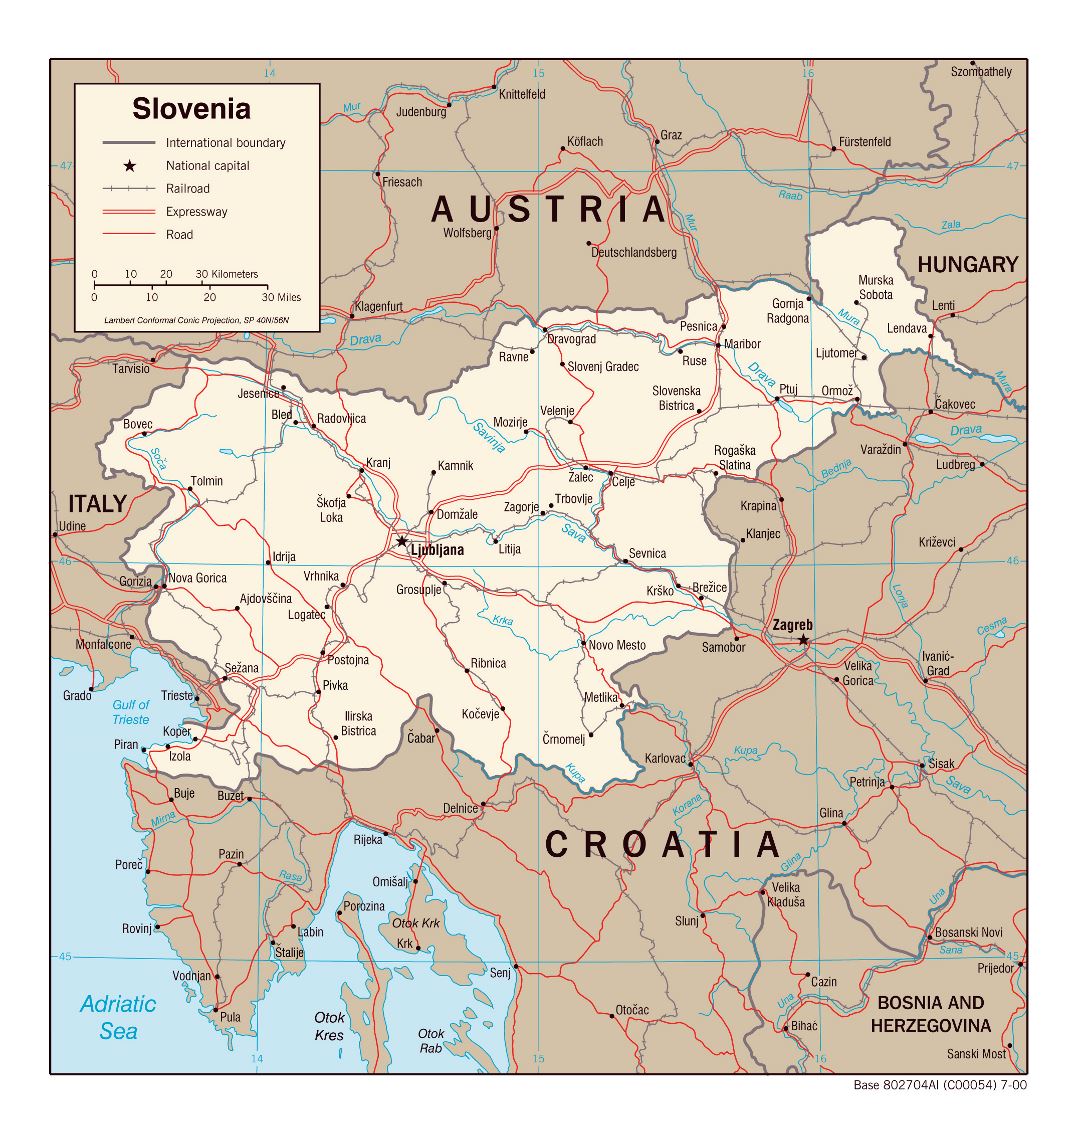 Grande detallado mapa político de Eslovenia con carreteras, ferrocarriles y ciudades principales - 2000